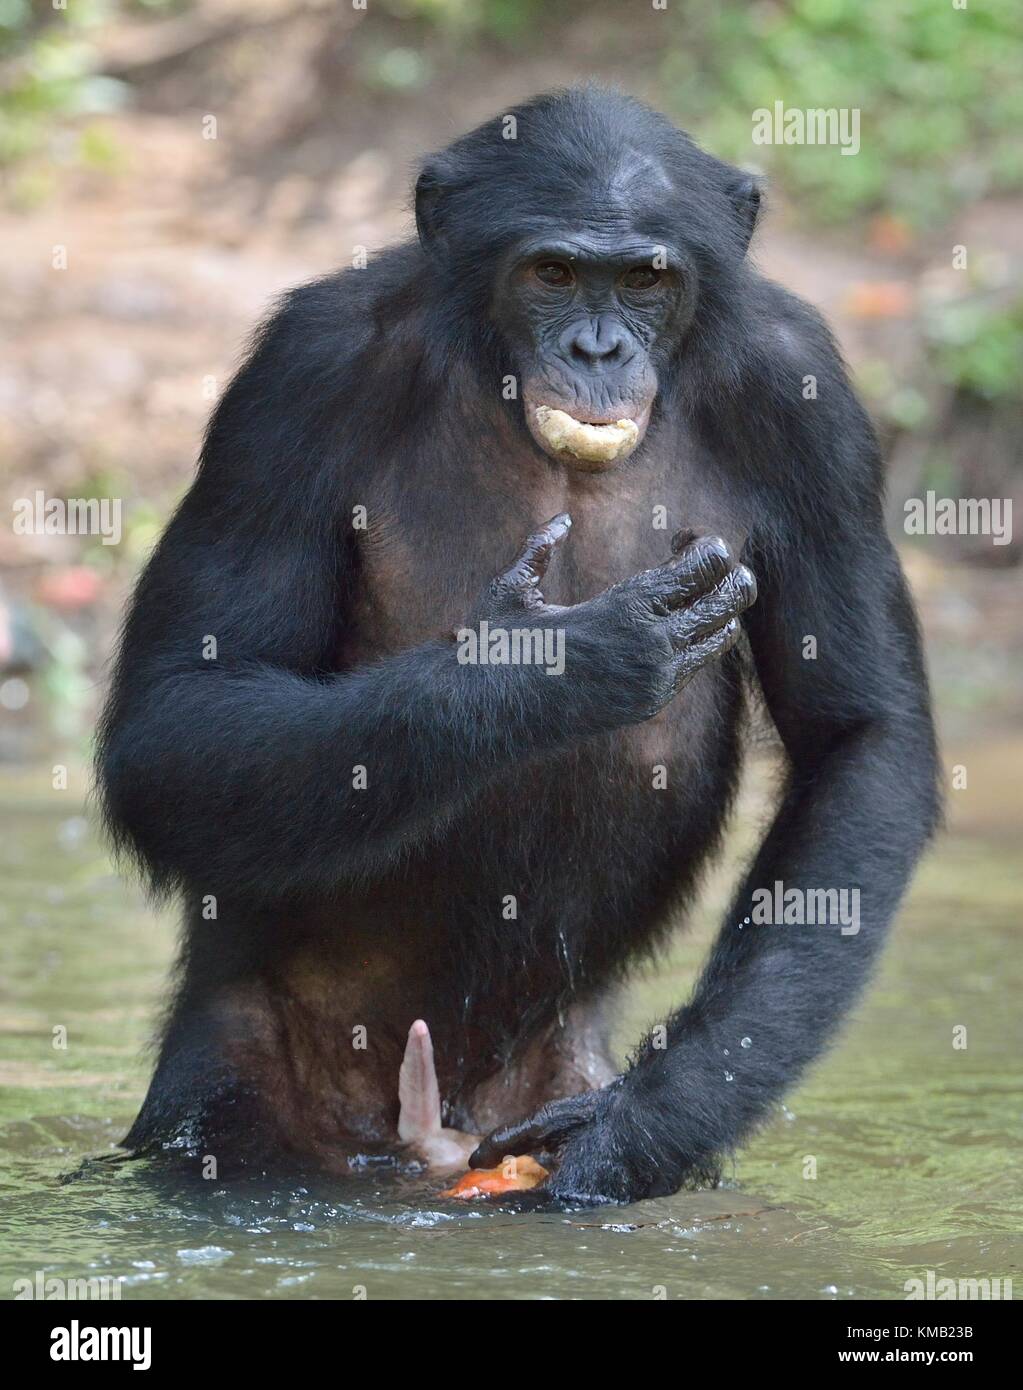 Bonobo stehend im Wasser sieht für die Frucht, die in Wasser fiel. Bonobo (pan paniscus). Demokratische Republik Kongo, Afrika Stockfoto